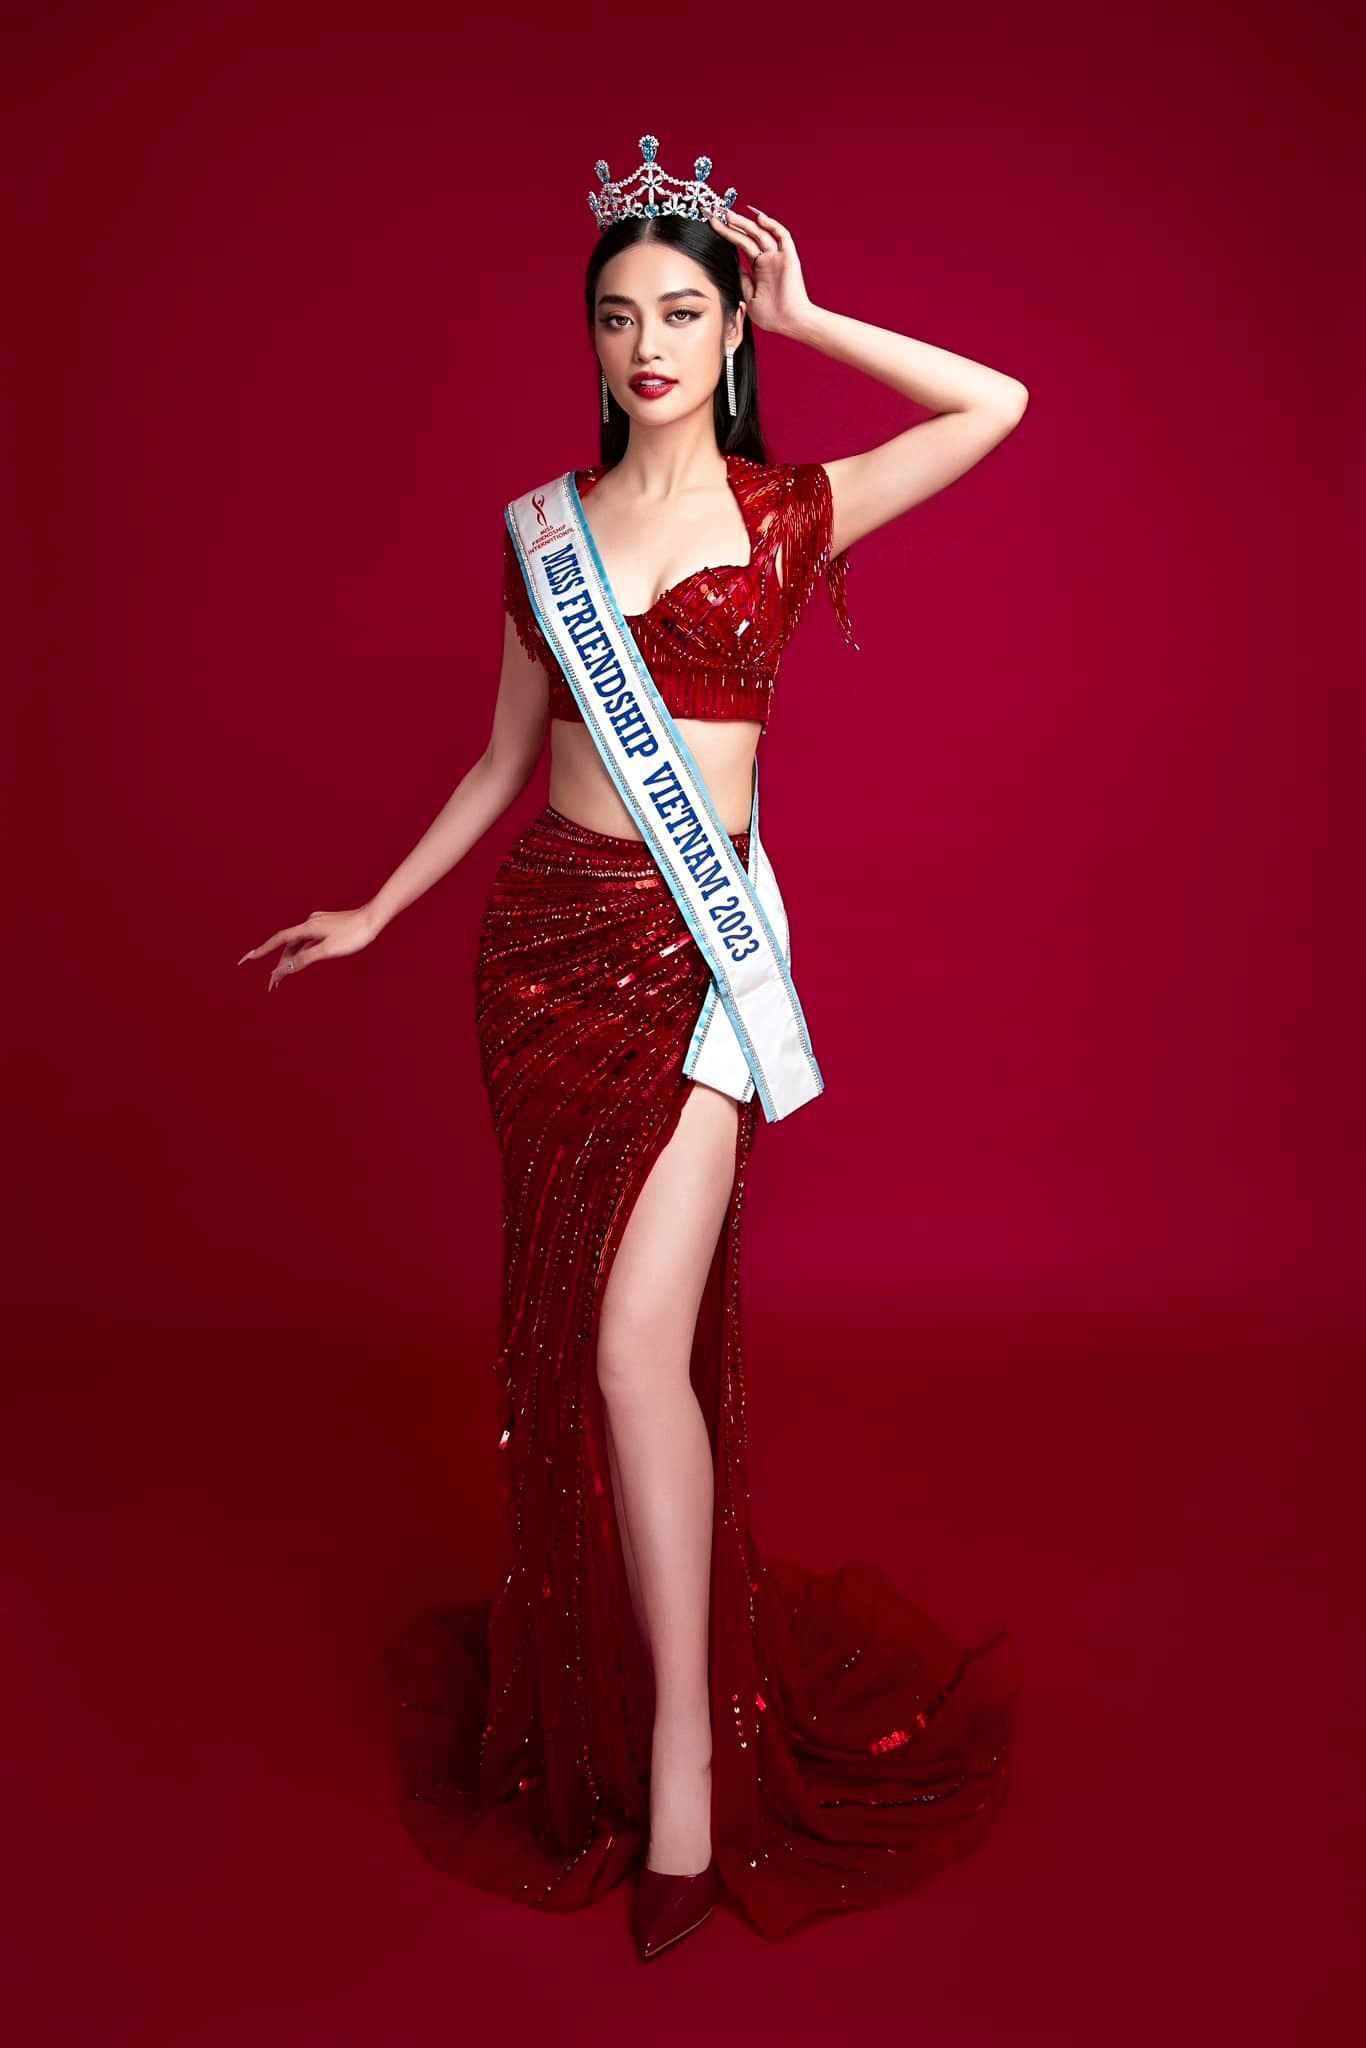 Nông Thúy Hằng giành ngôi vị Á hậu 2 của Hoa hậu Hữu nghị Quốc tế 2023 - ảnh 3